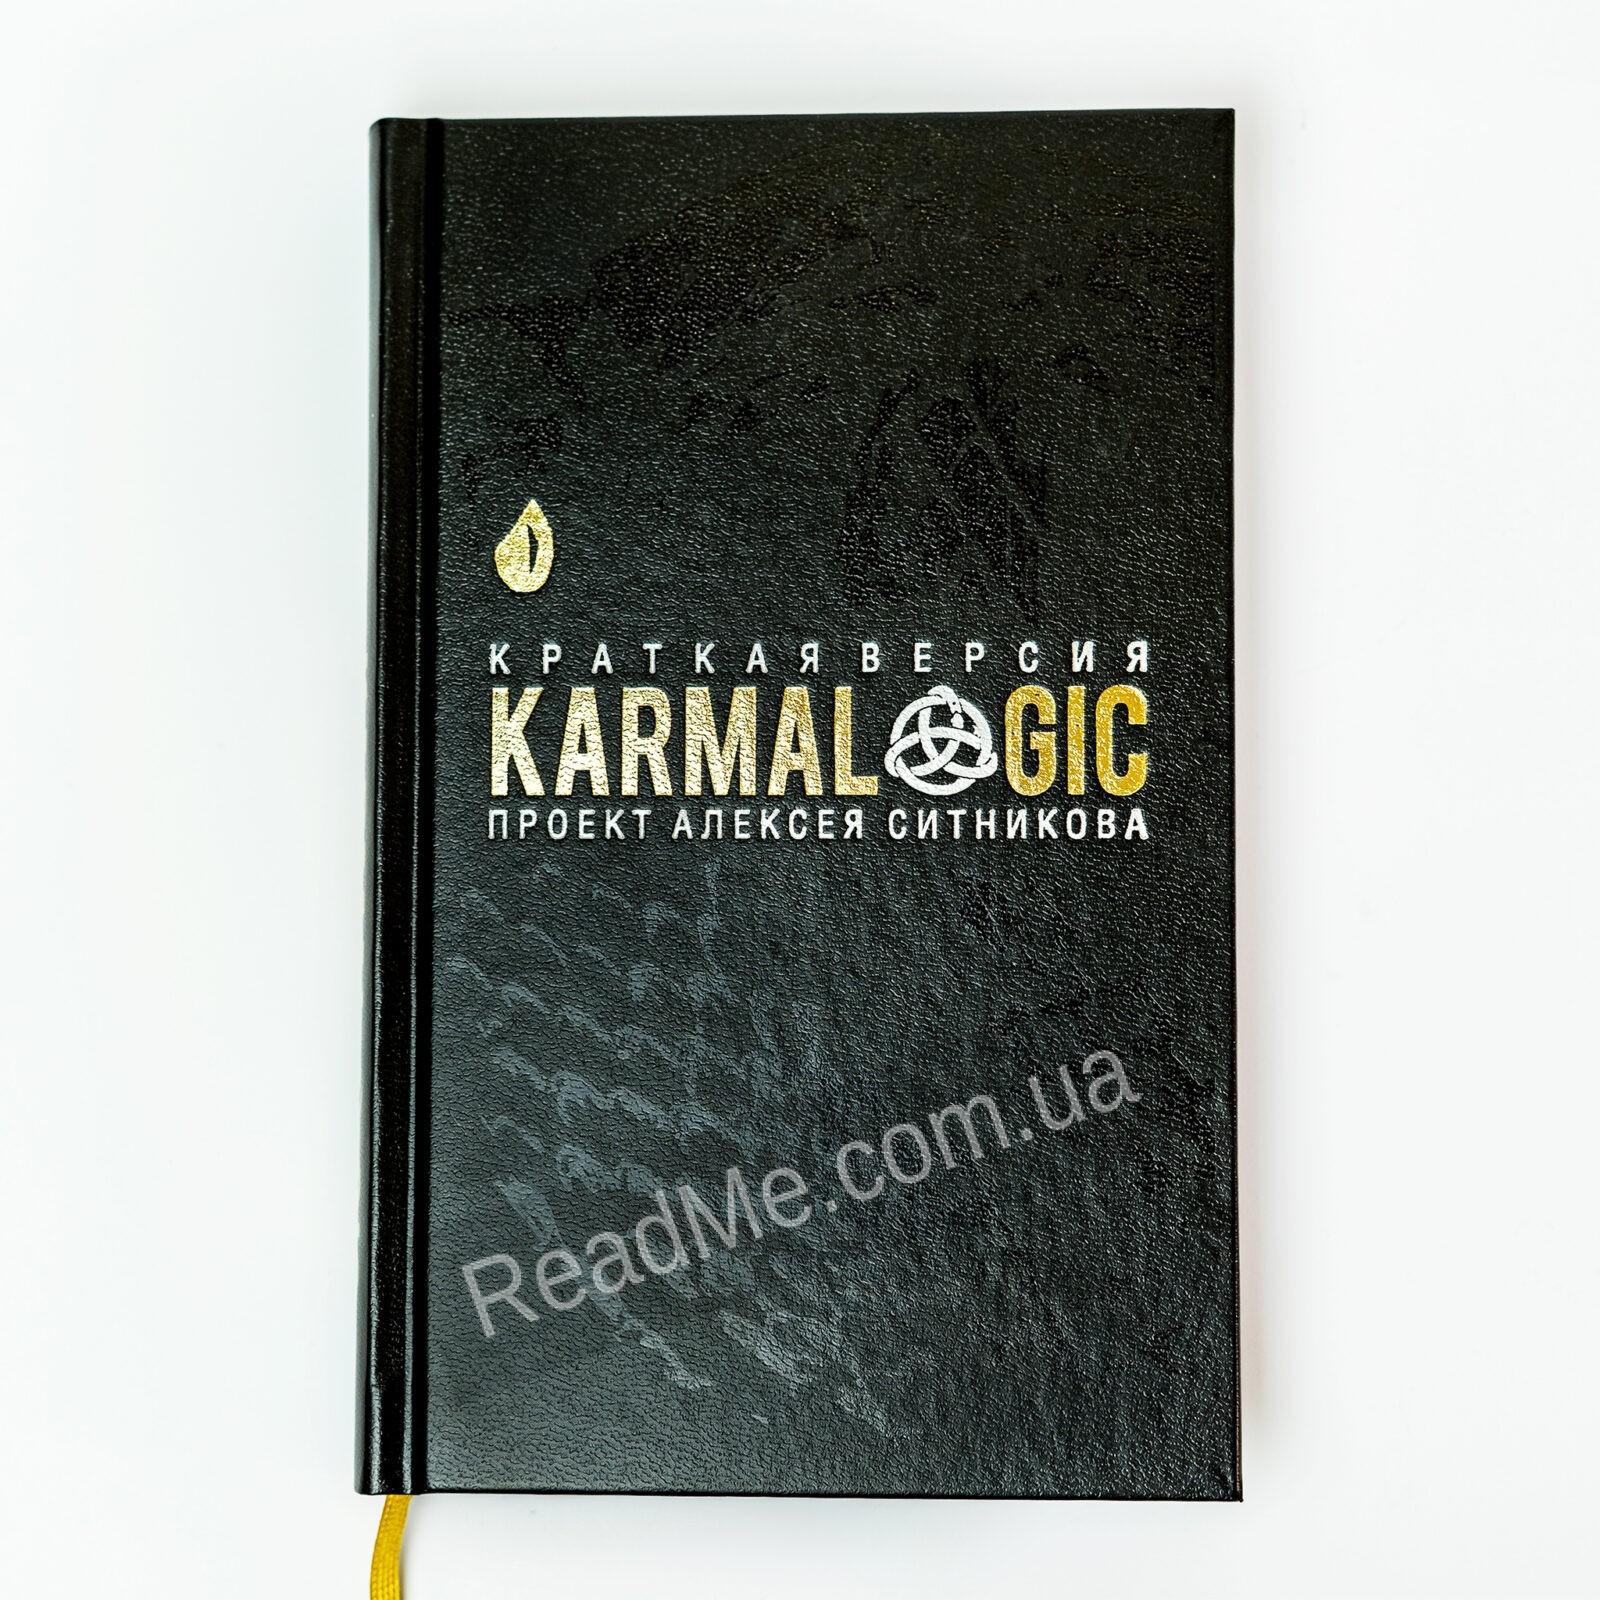 Karmalogic sitnikov download pdf